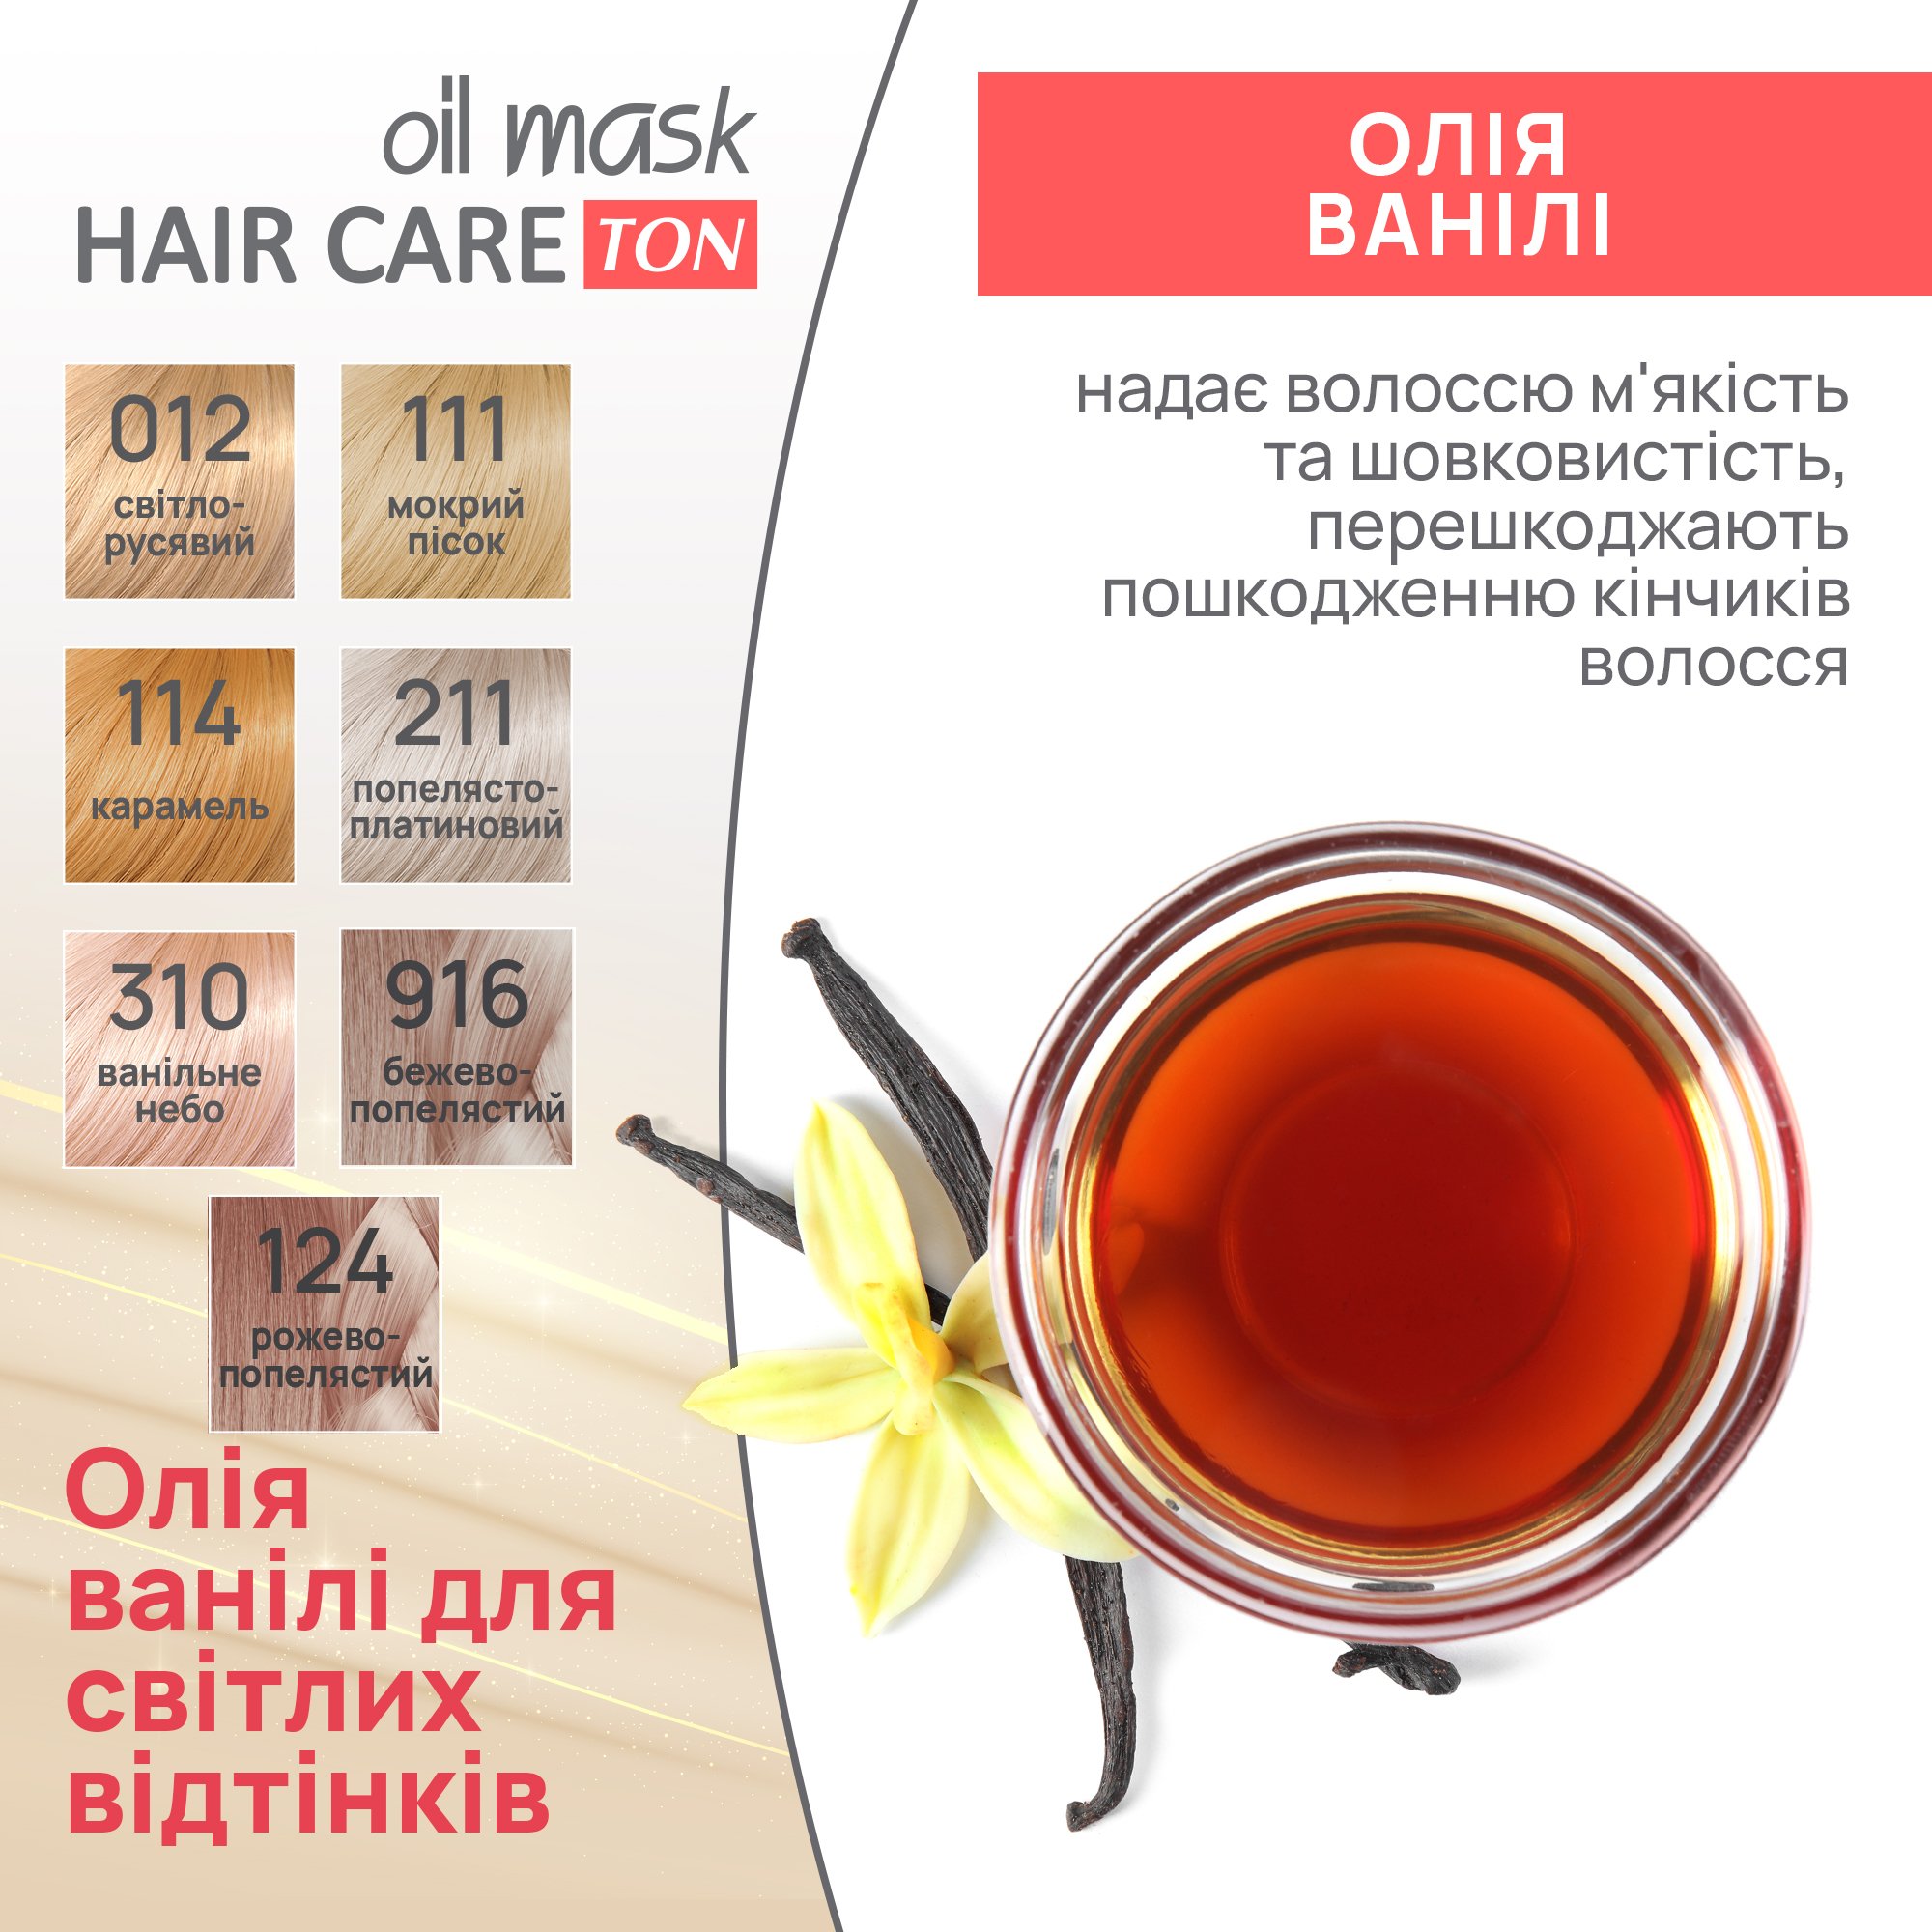 Тонуюча маска для волосся Acme Color Hair Care Ton oil mask, відтінок 916, бежево-попелястий, 30 мл - фото 6